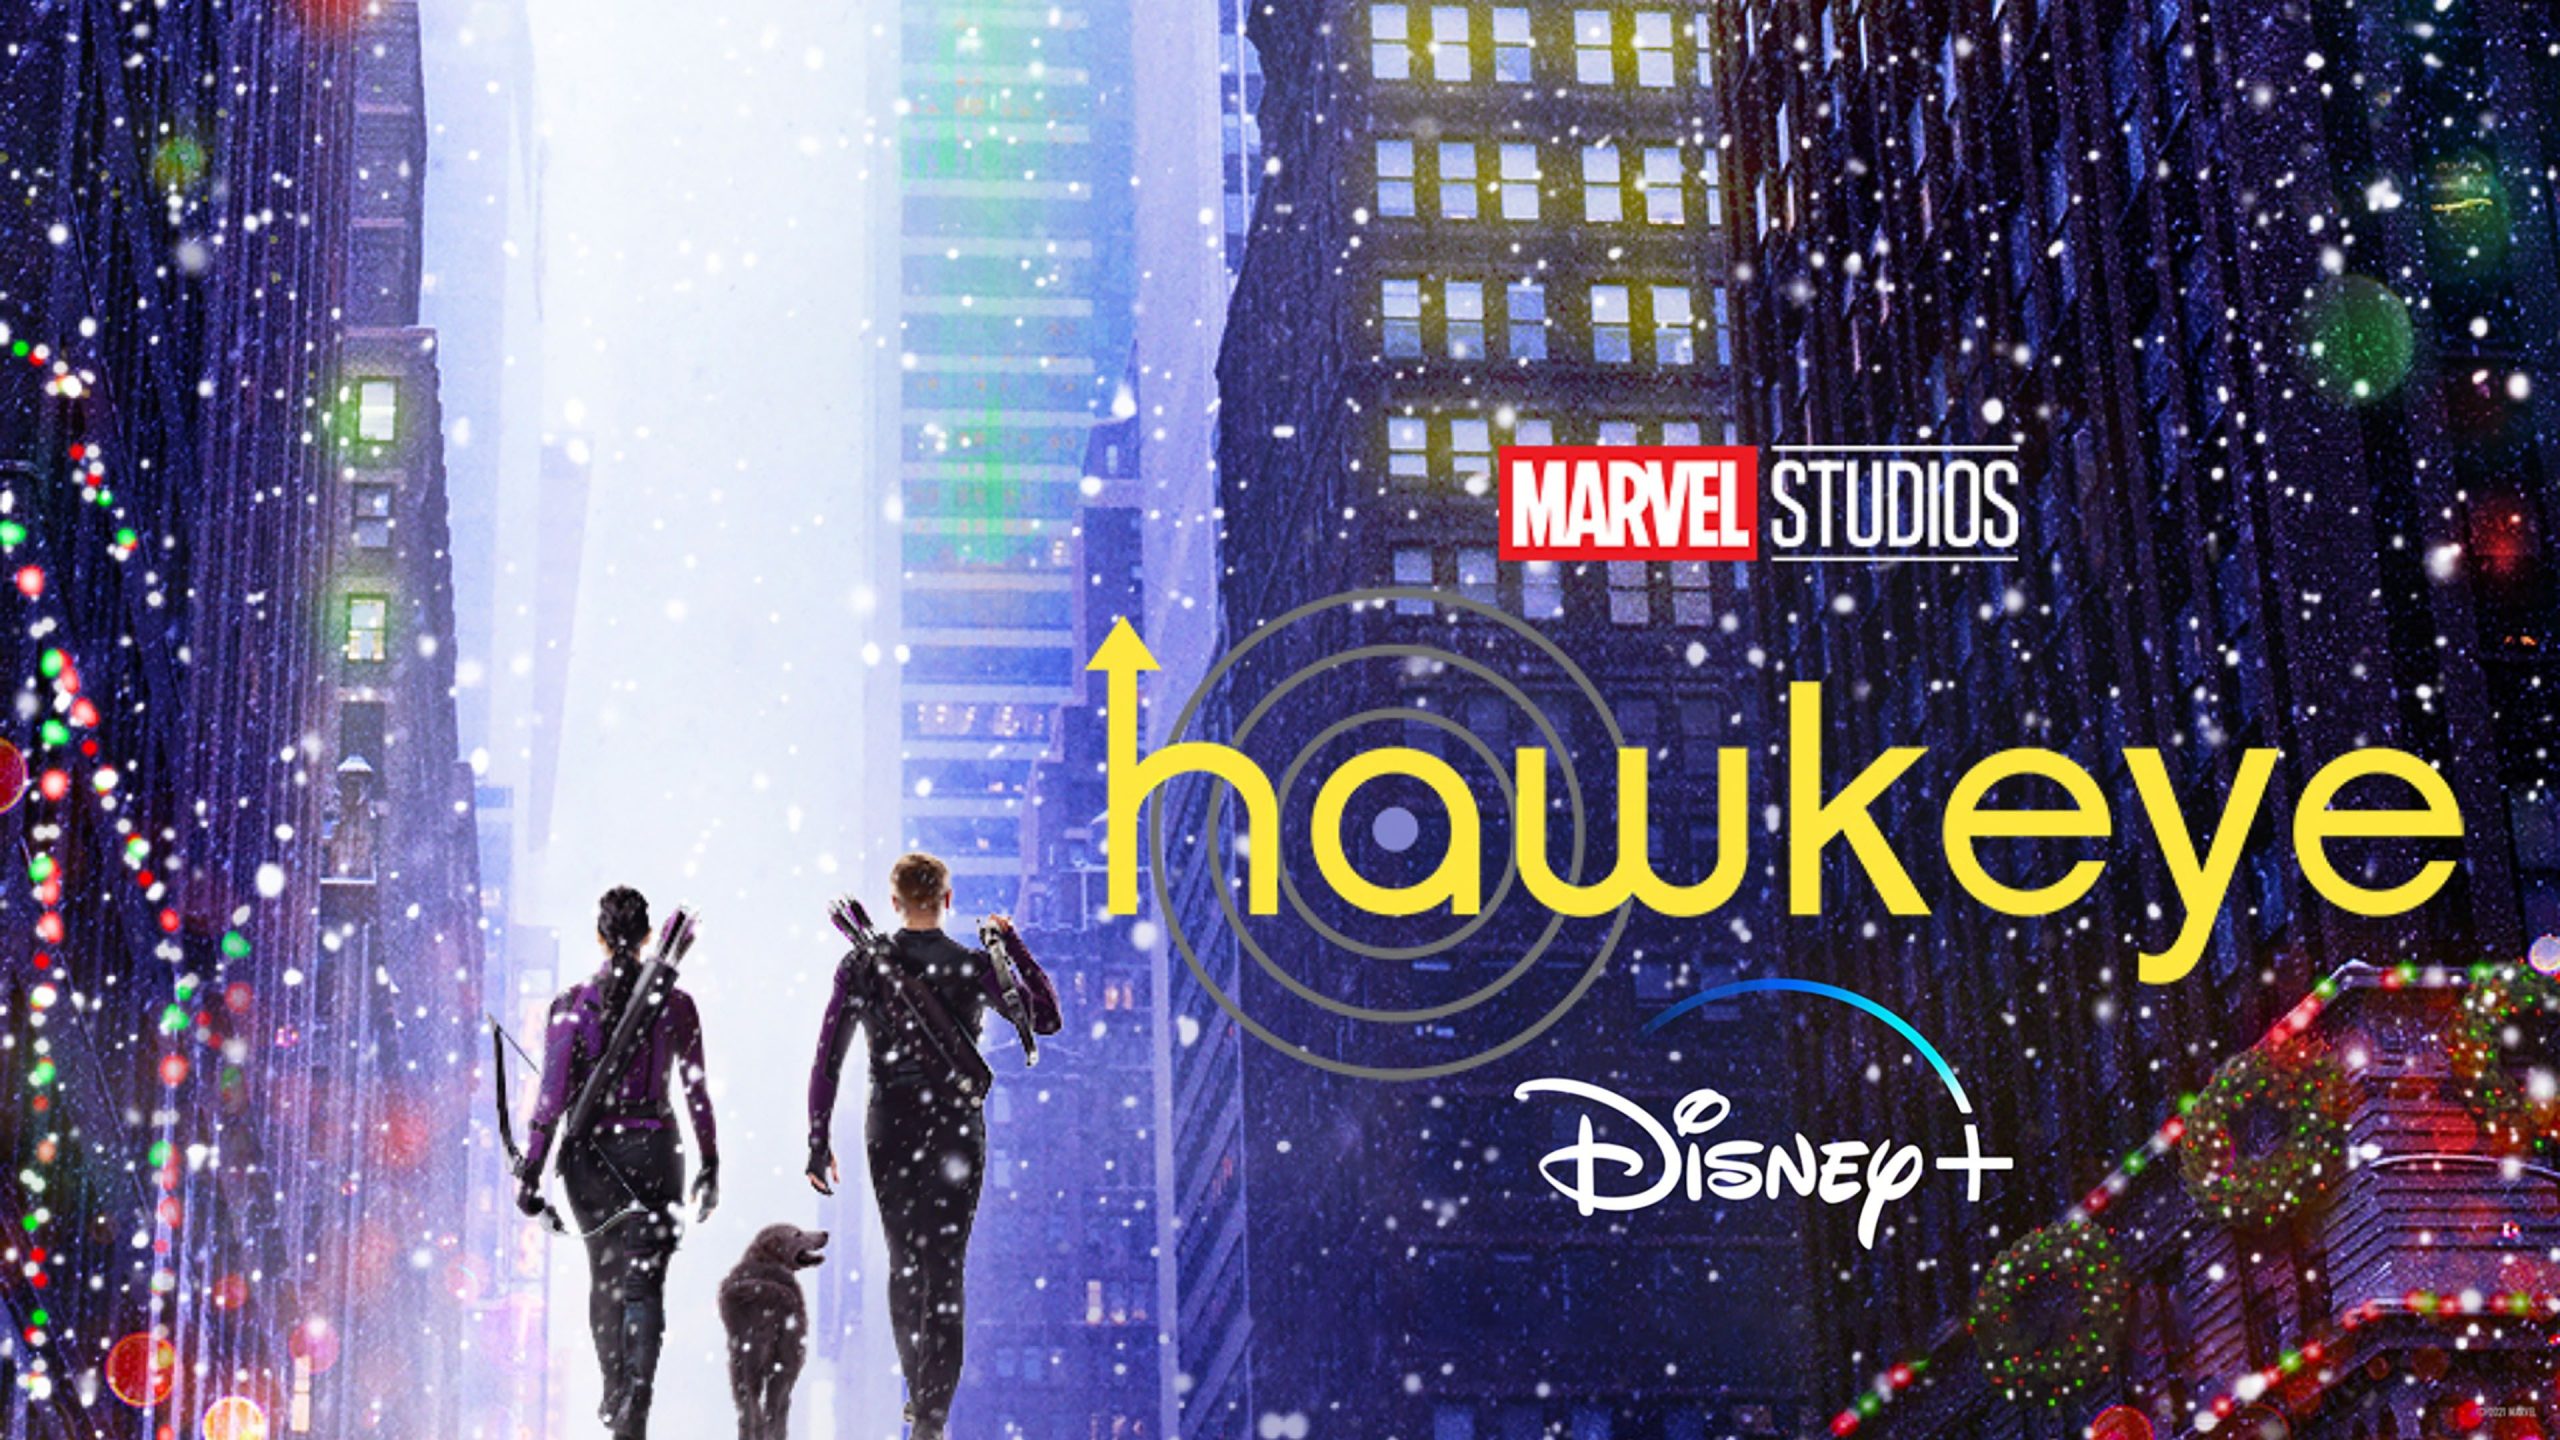 Hawkeye Season 2 has been canceled